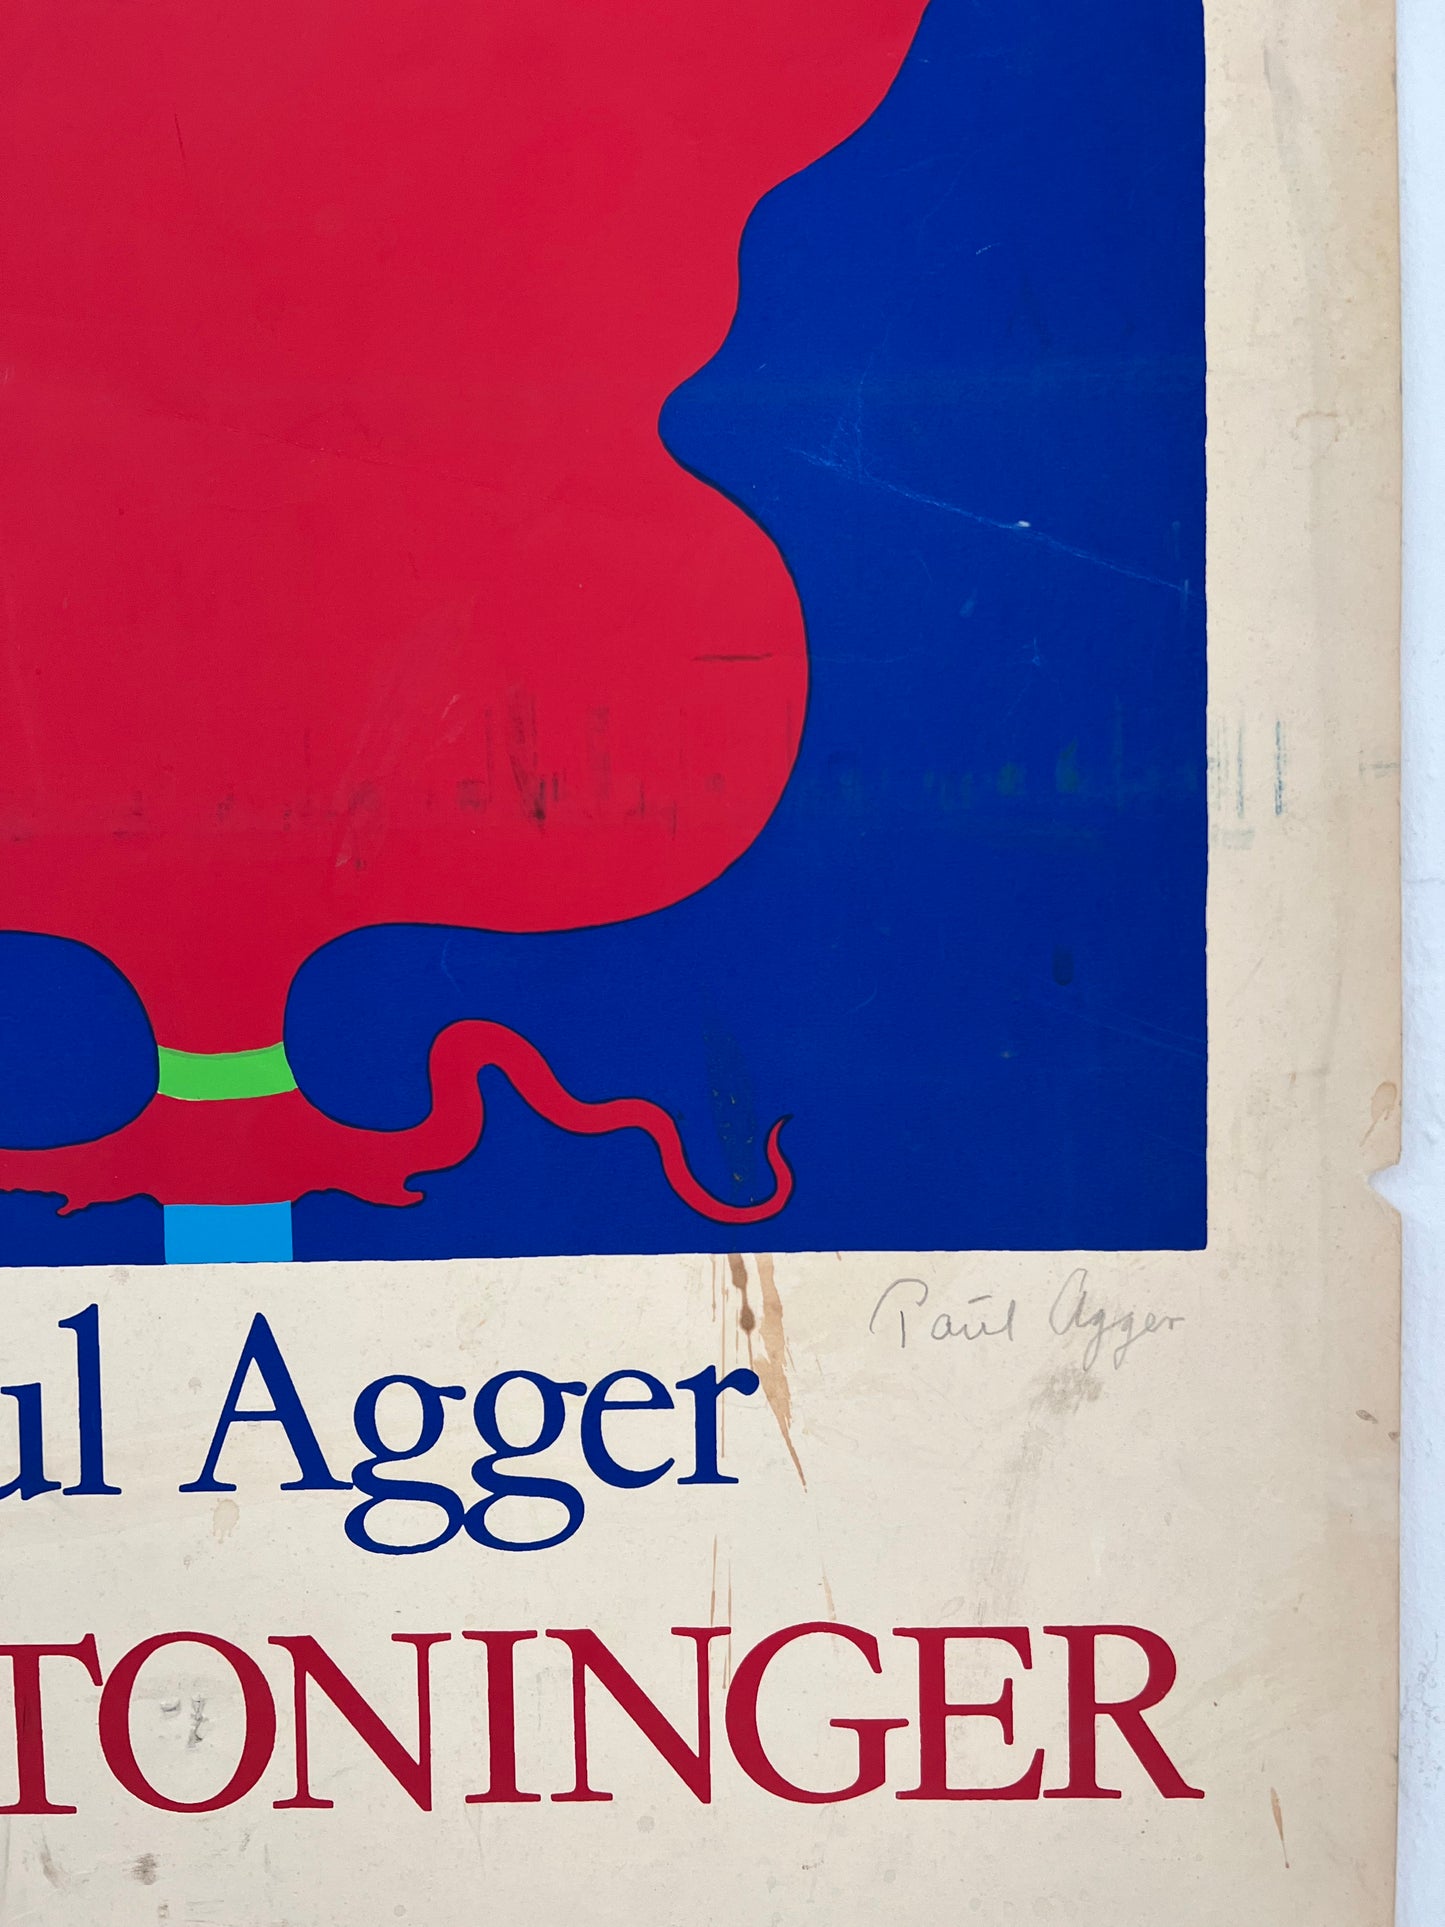 Poul Agger. “Fremtoninger”, 1972